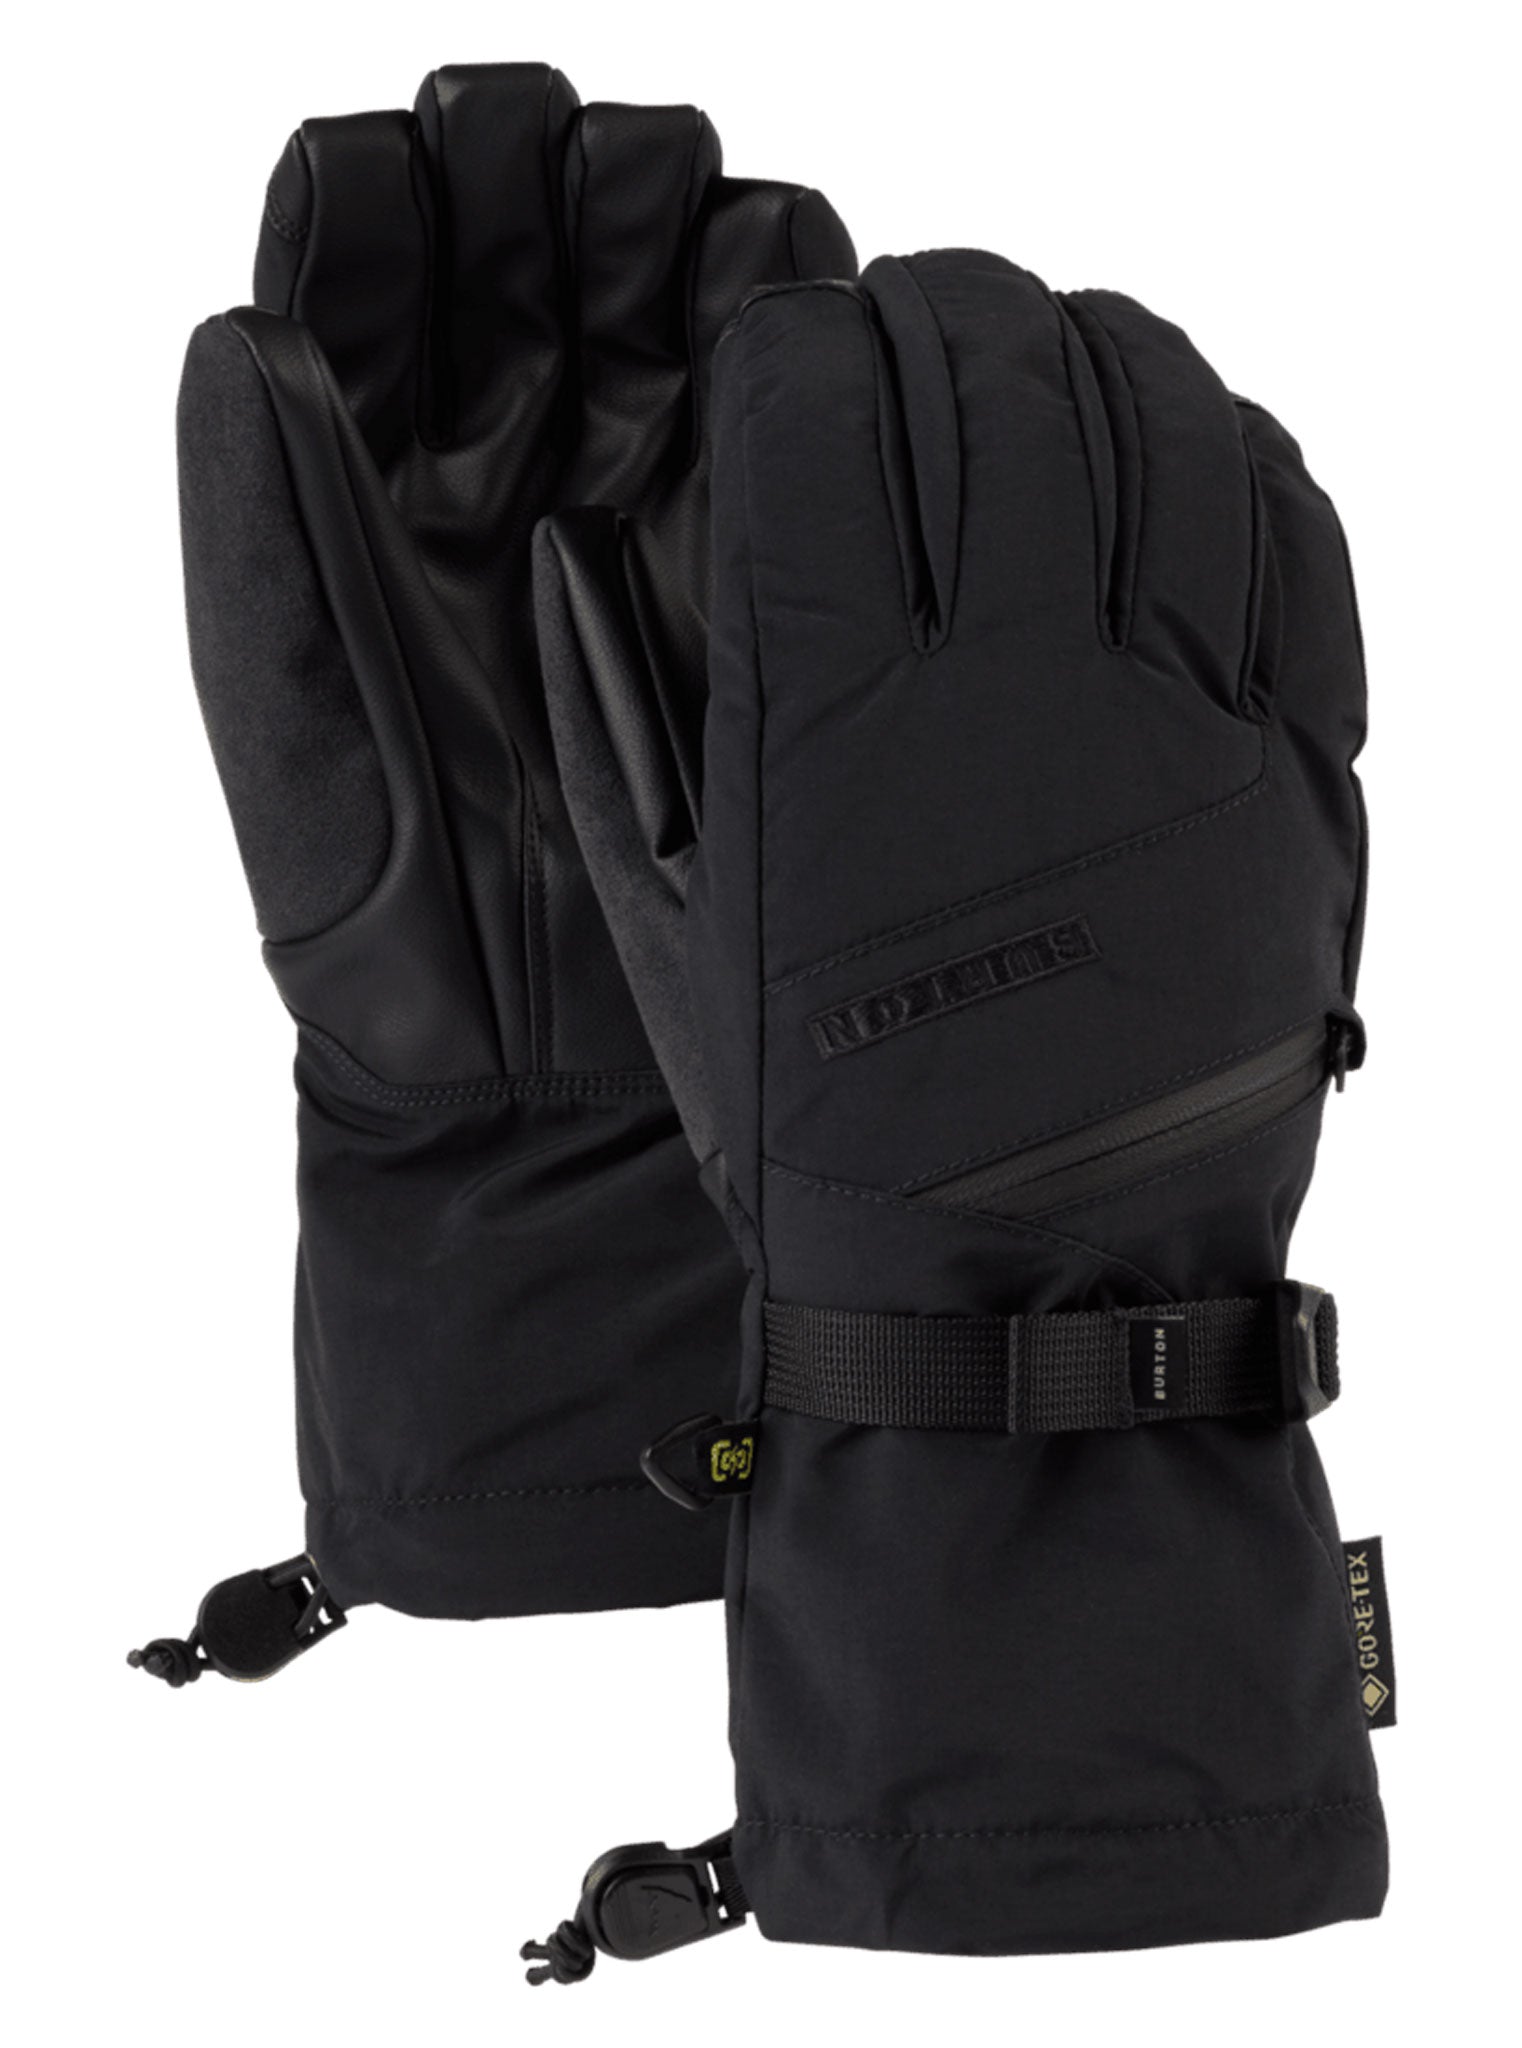 Women's Gore-Tex Gloves